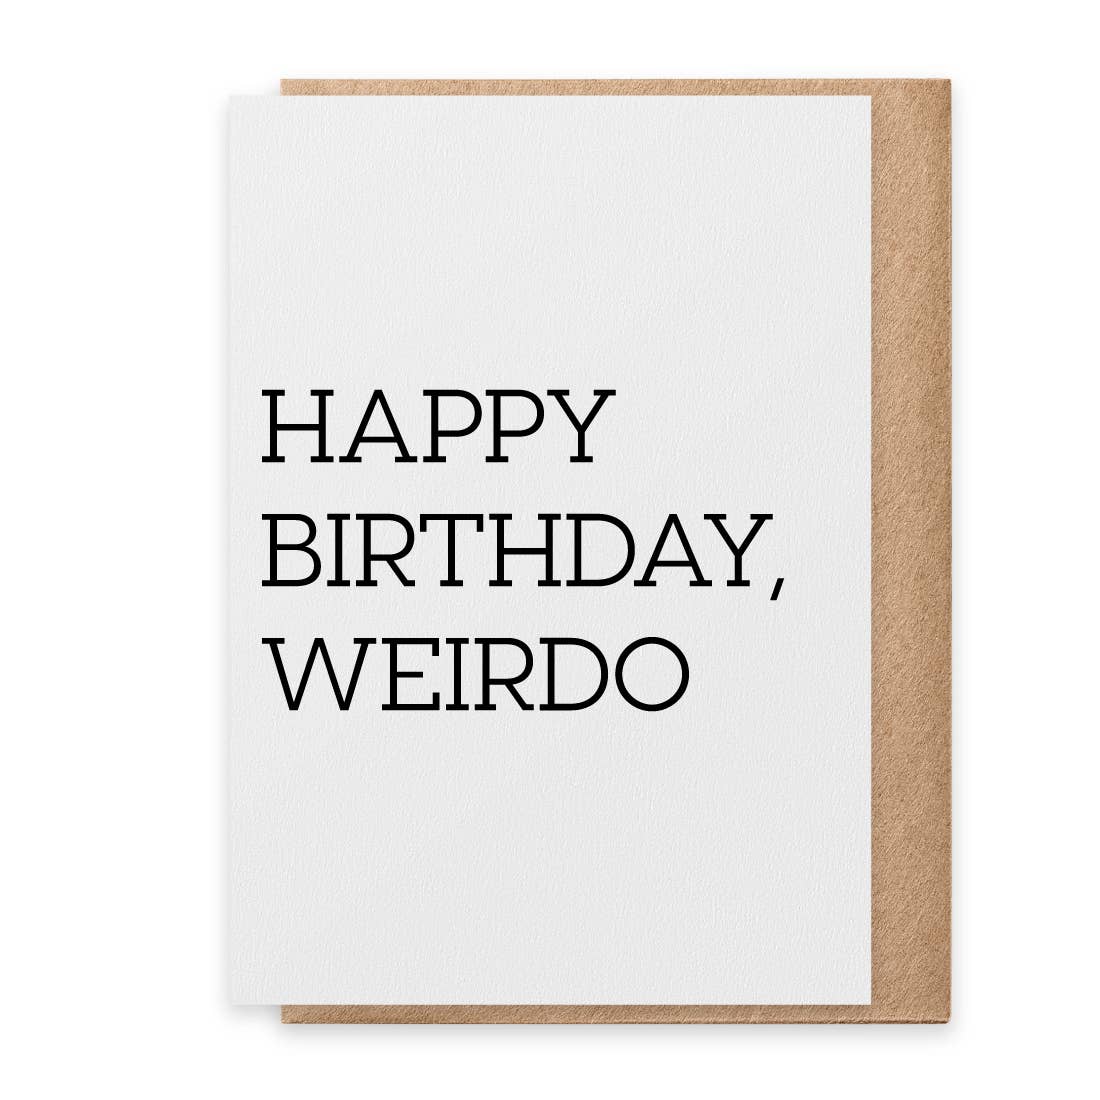 Weirdo - Greeting Card